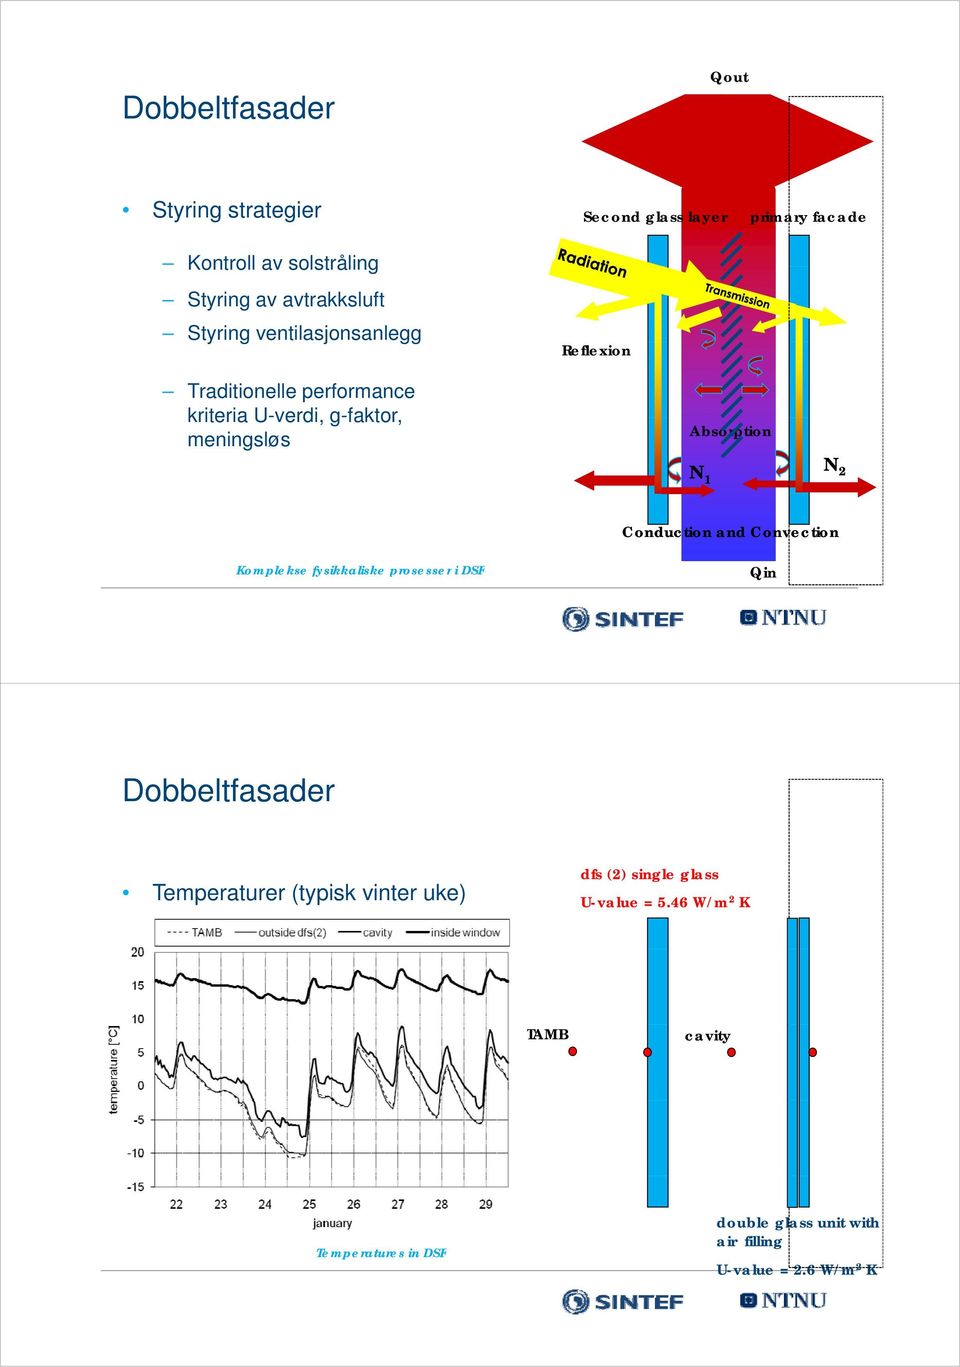 N 1 N 2 Conduction and Convection Komplekse fysikkaliske prosesser i DSF Qin Dobbeltfasader Temperaturer (typisk vinter uke)